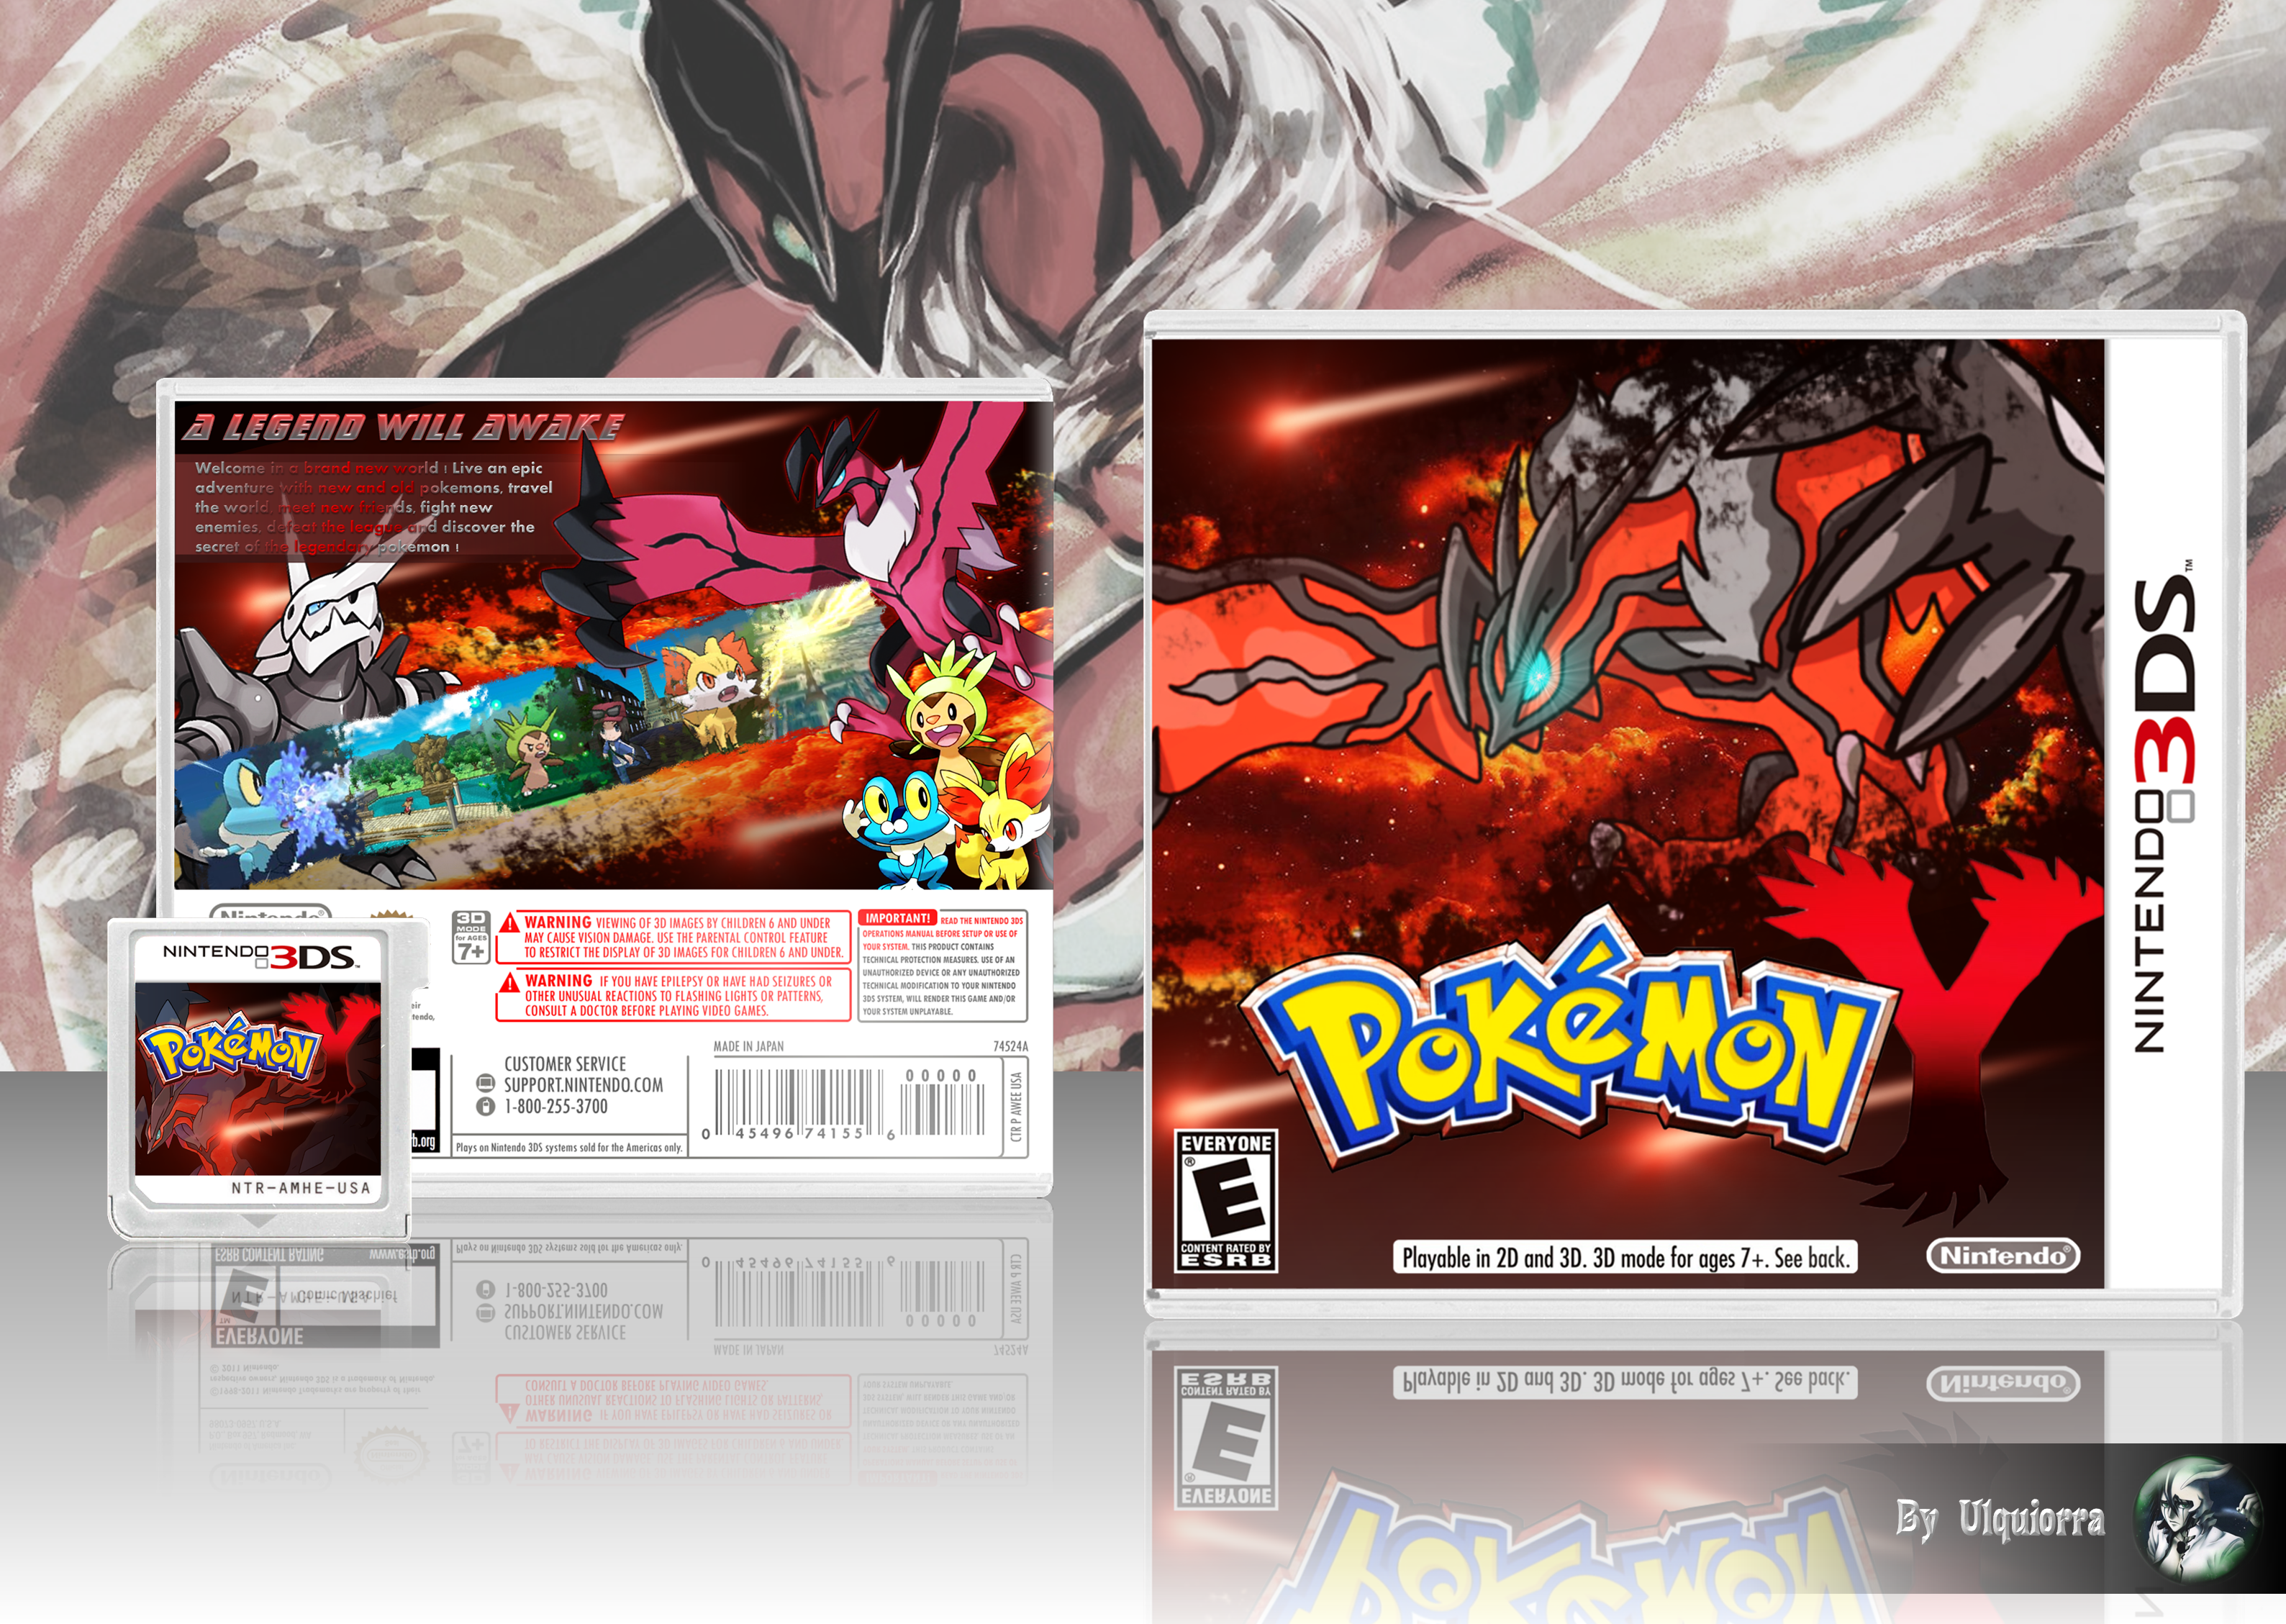 Pokemon Y box cover